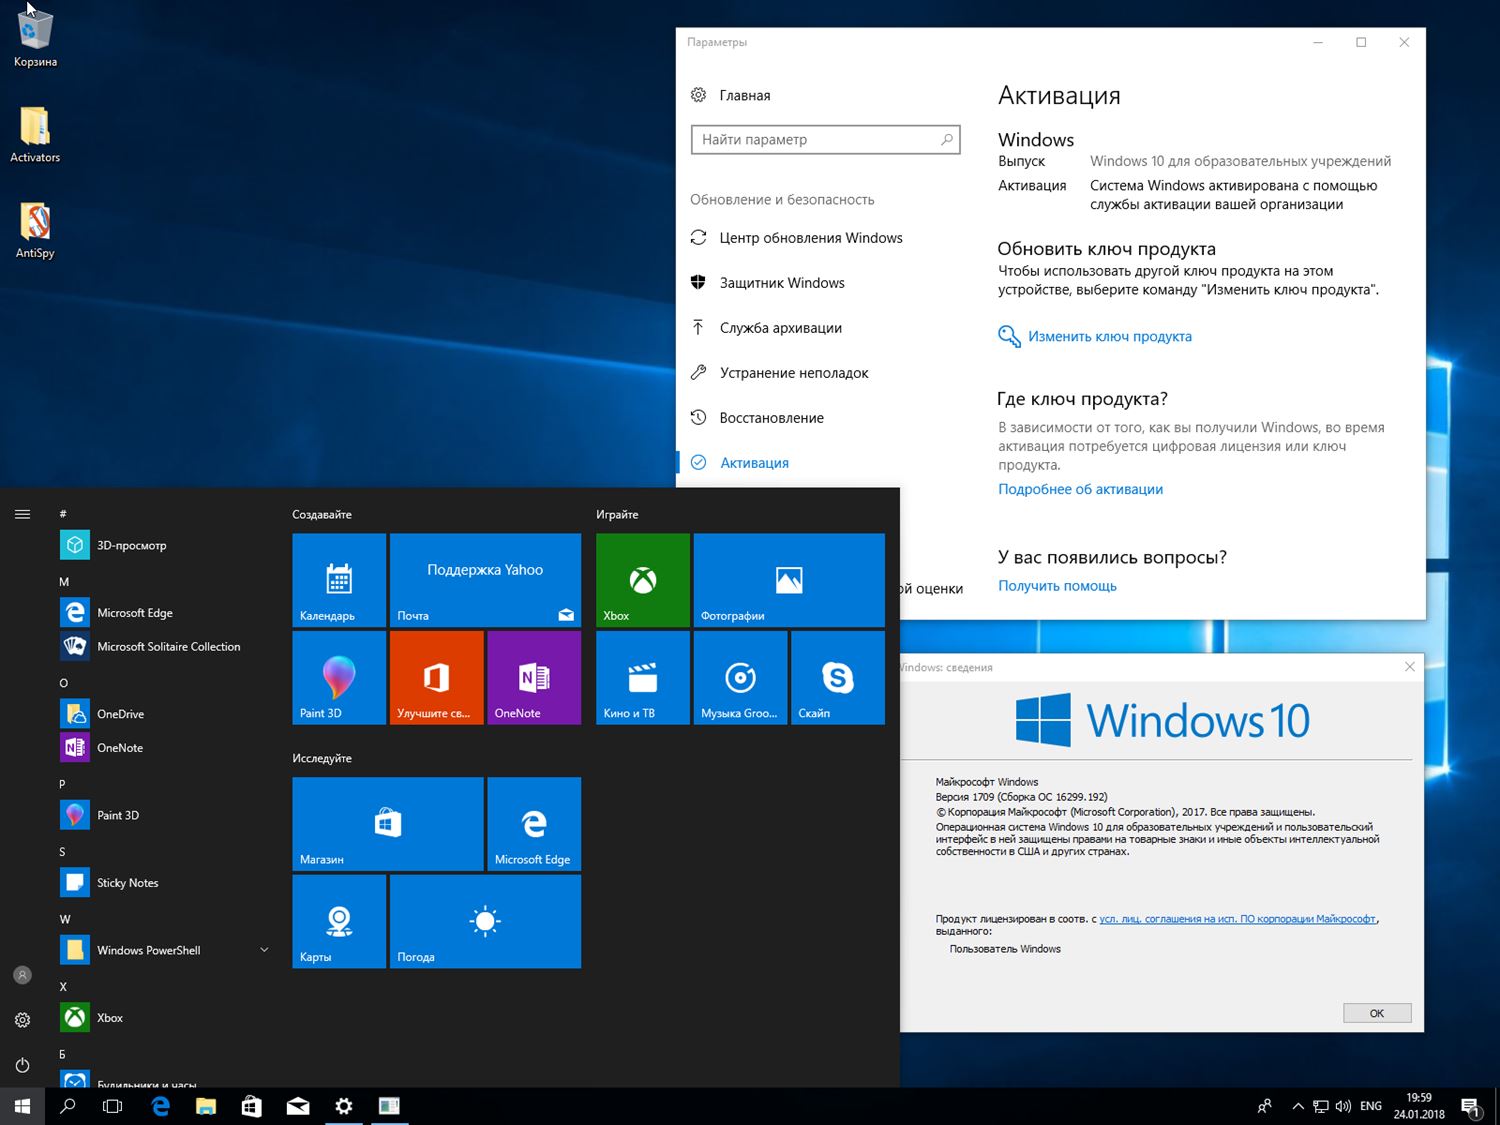 Создание сборок windows. Windows 1709. Виндовс 10 1709. Сборки виндовс 10. Цифровая лицензия Windows 10.